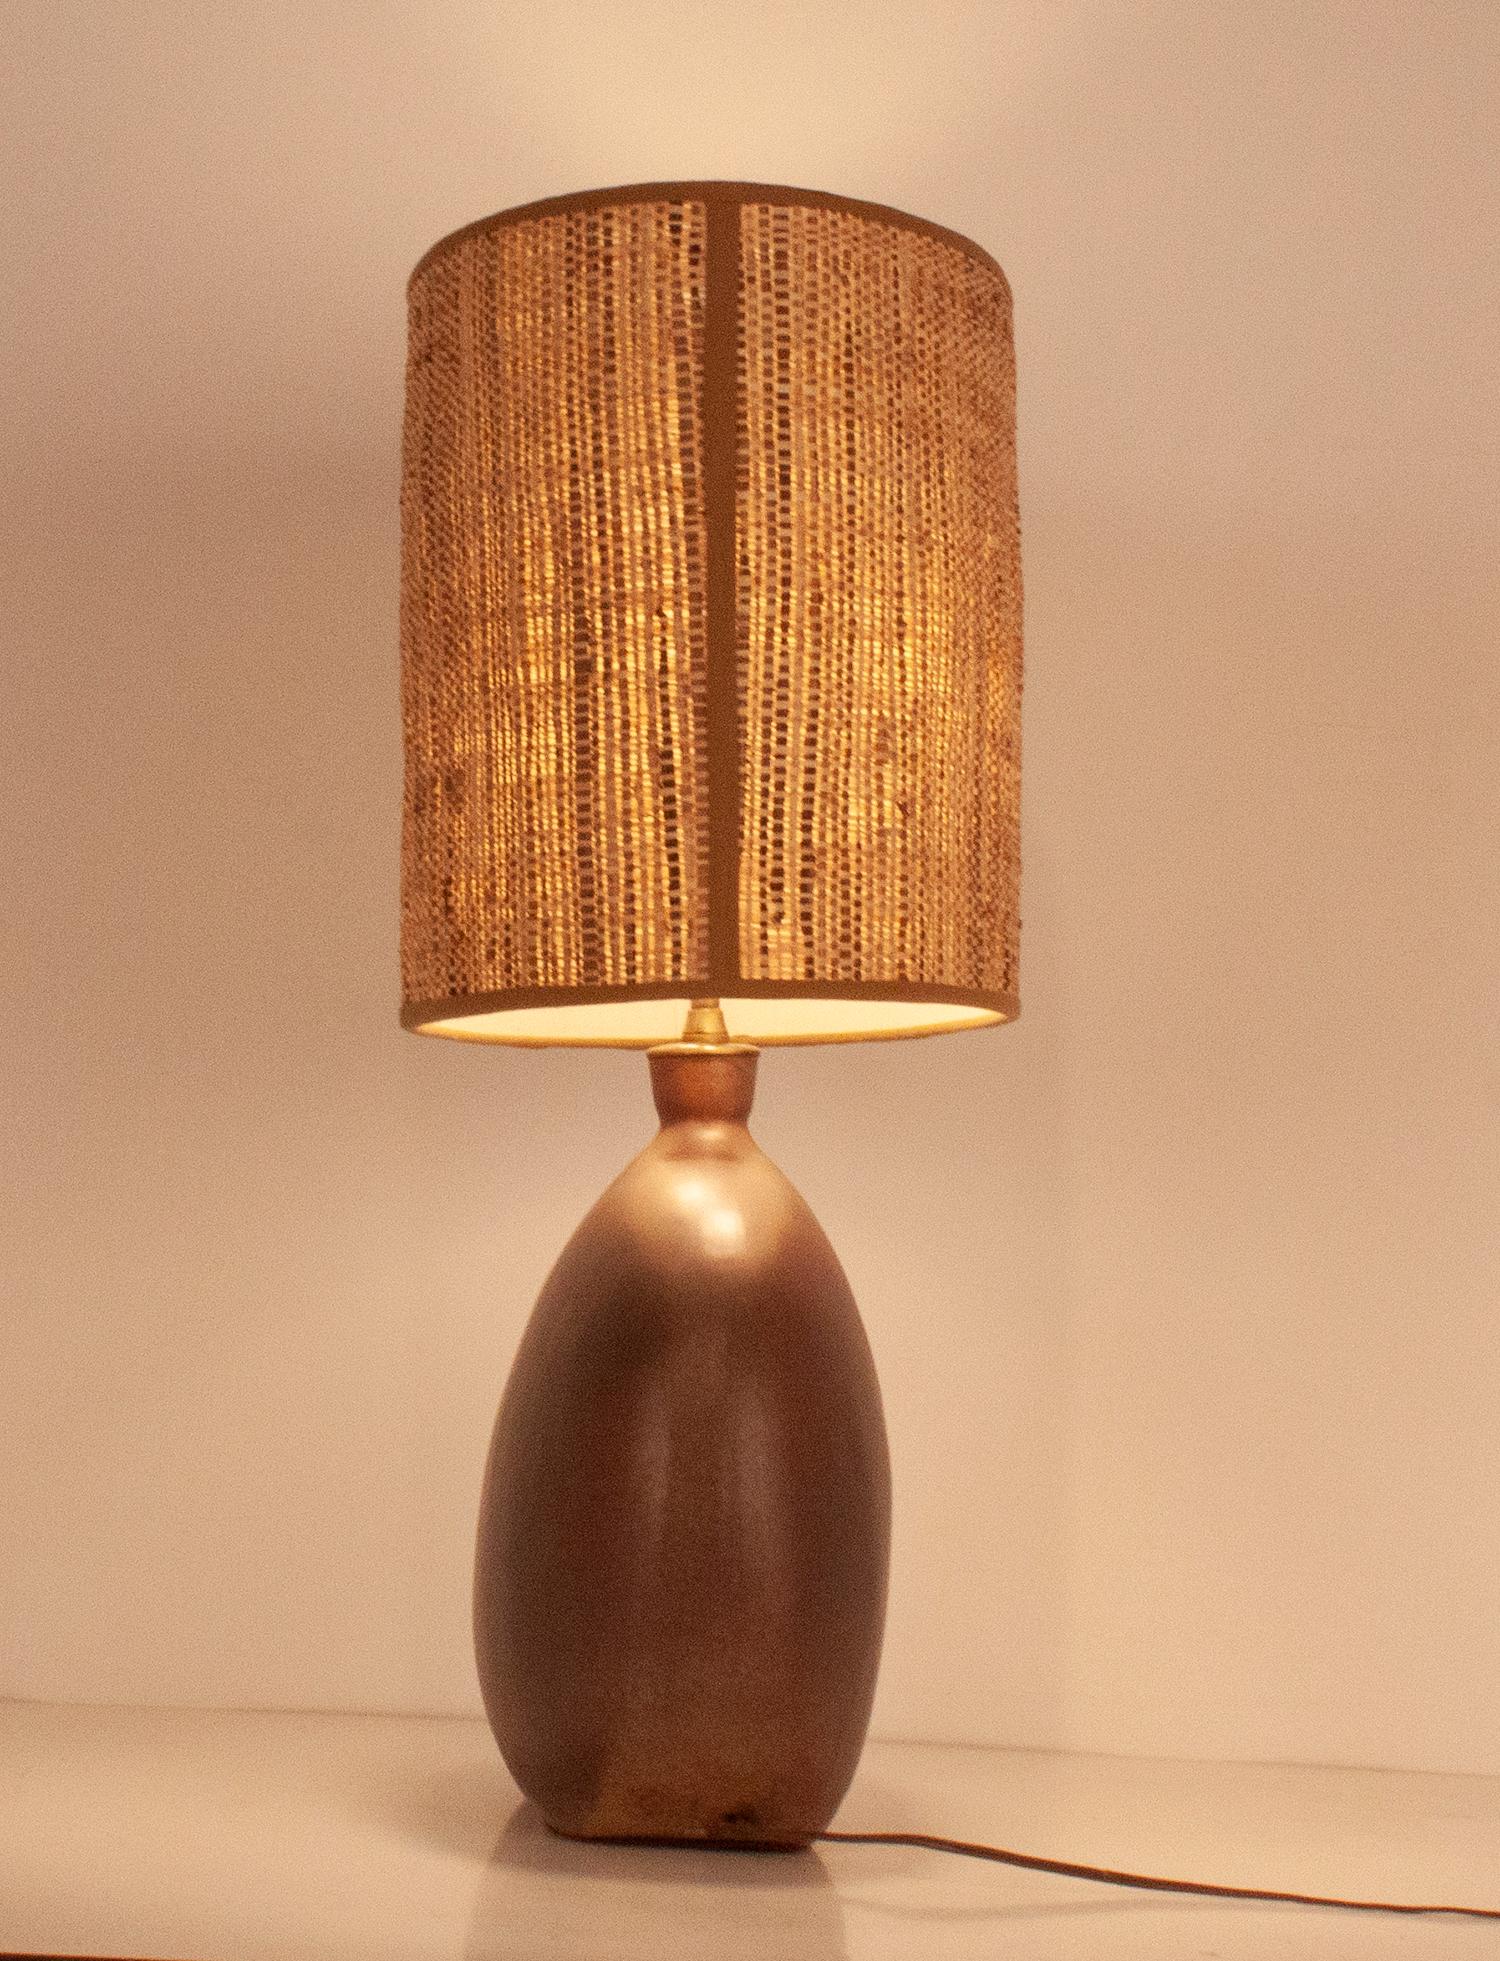 Grande lampe en céramique réalisée par Jordi Aiguadé. Vers 1970.
De couleur brune et de forme très organique. La taille est spectaculaire.
Il est en très bon état.
Abat-jour, la structure est d'origine et le textile a été changé, il s'agit de